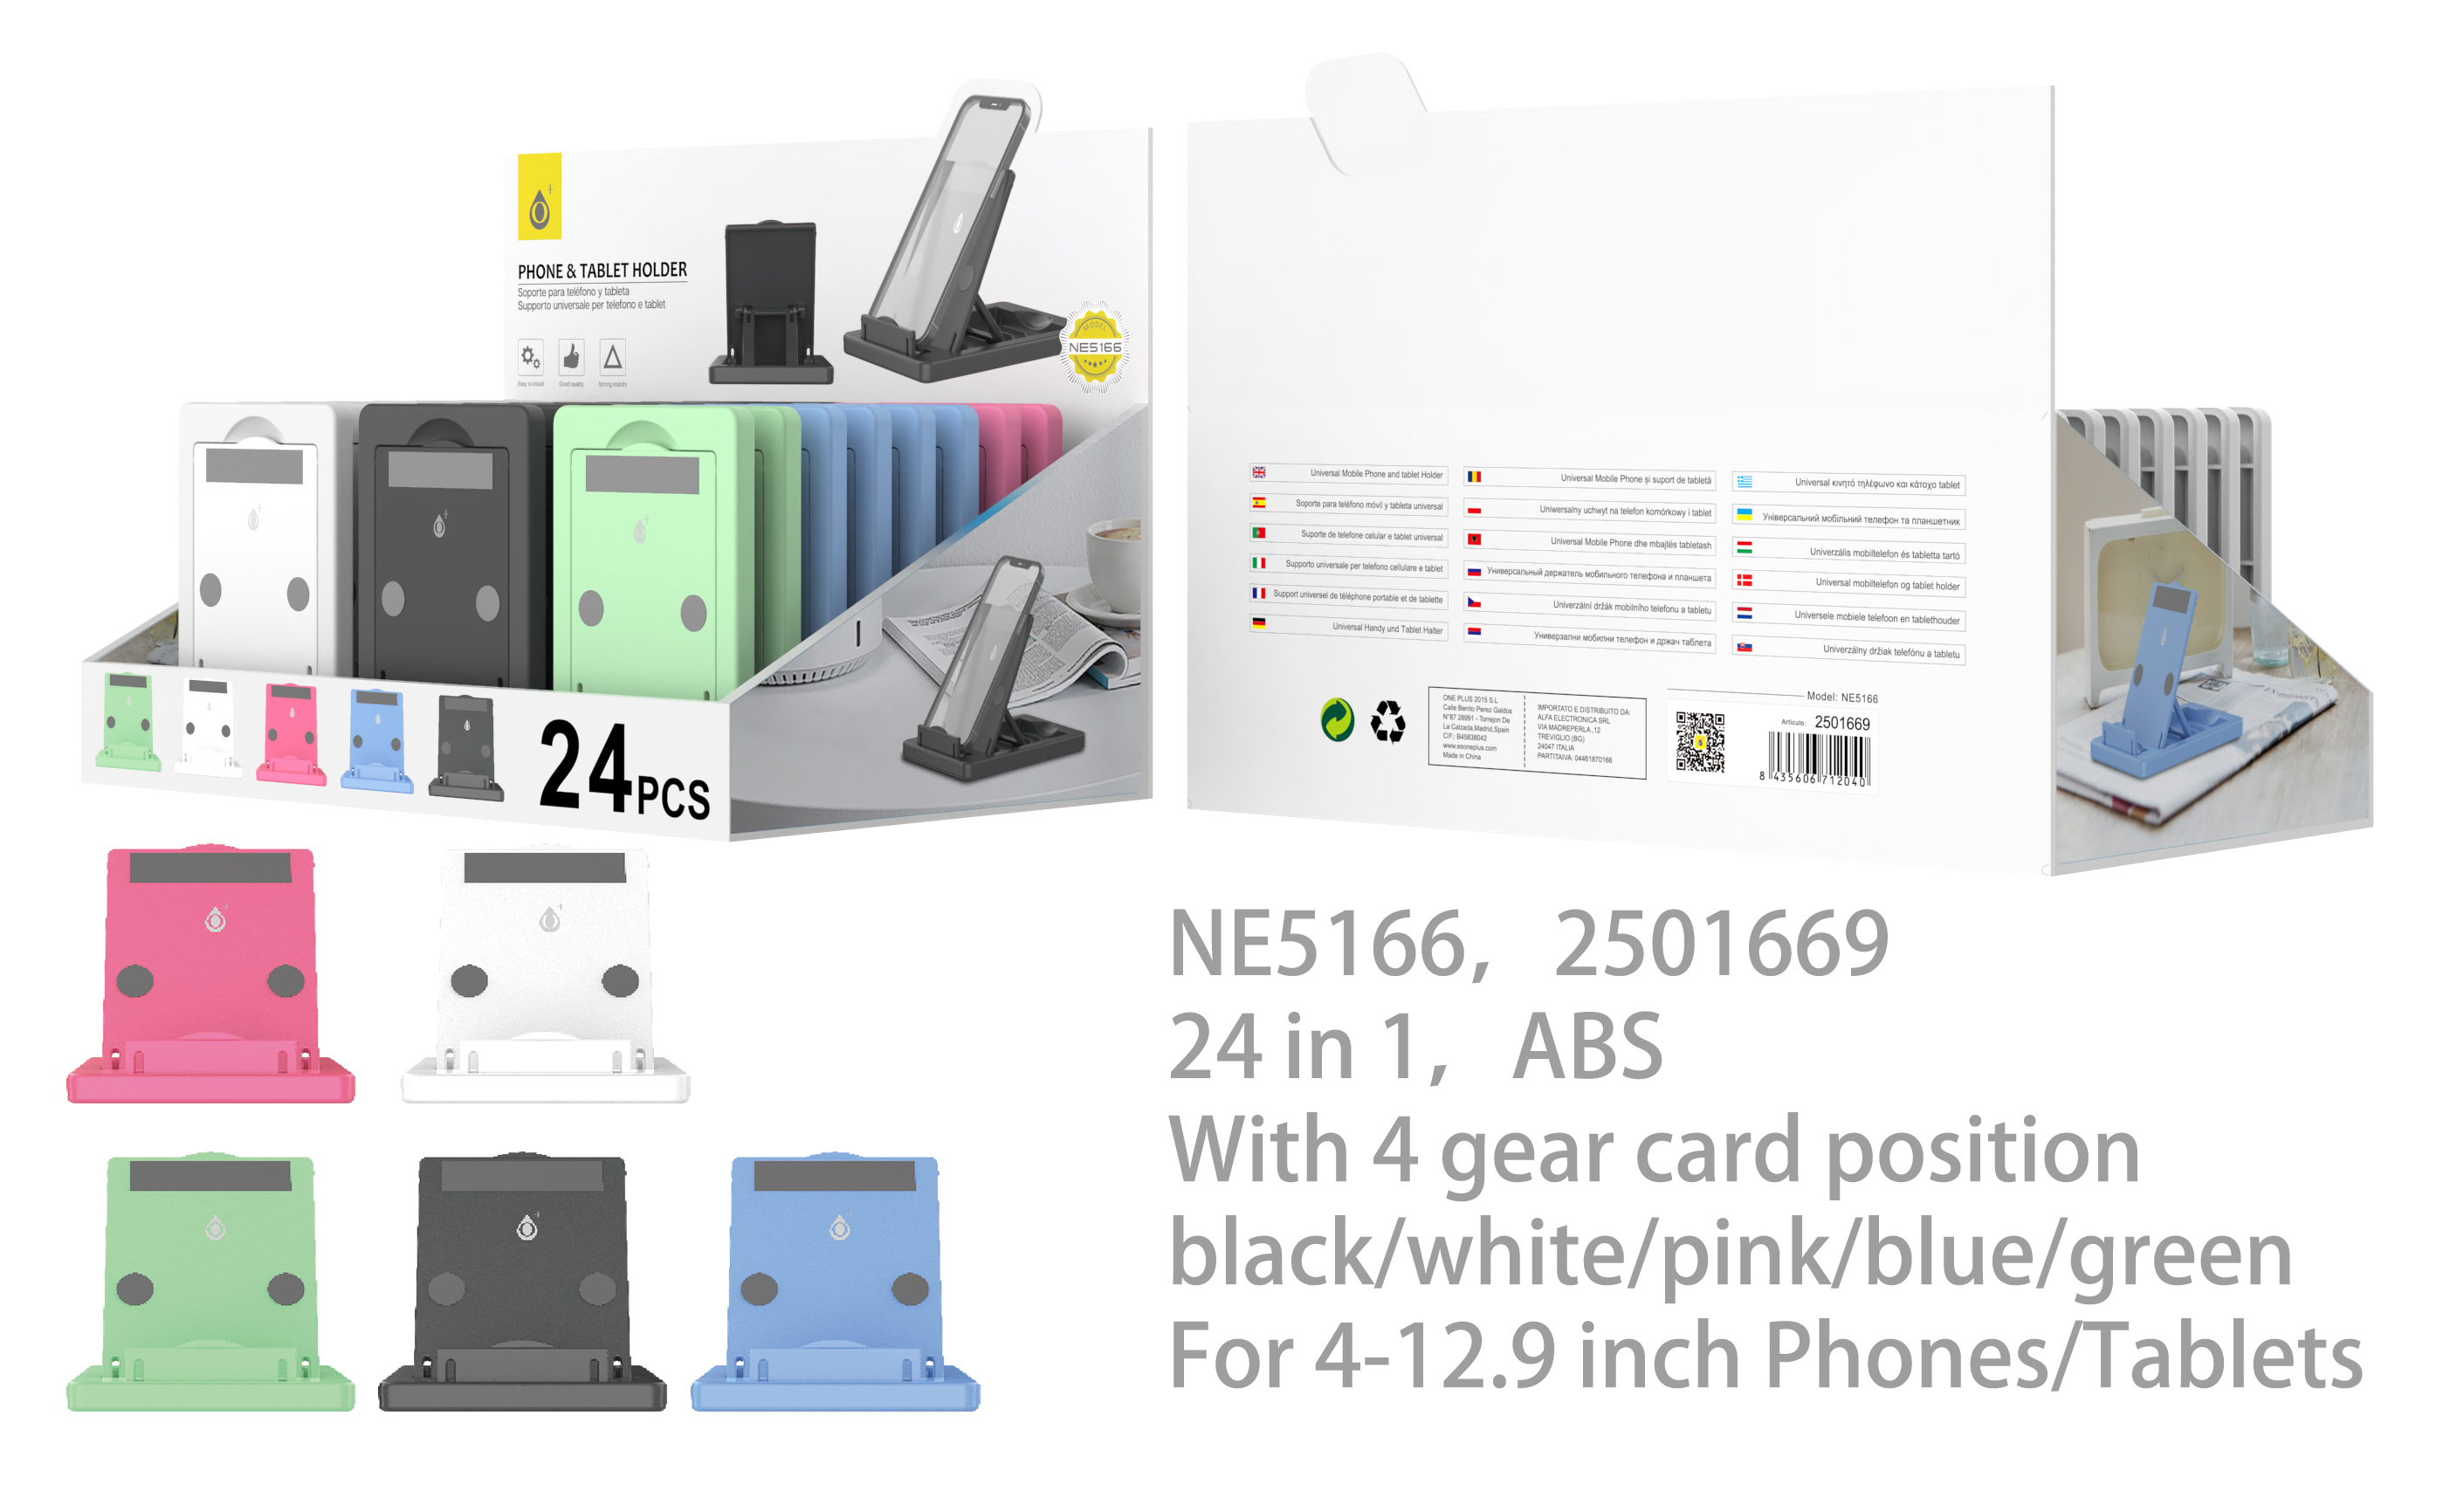 NE5166 MIX Soporte Universal para Movil y Tablet con 4 posicion de Tarjeta, 4-12.9 Pulgada, Multicolores, 24 psc/Pack (Vende por Paquete)